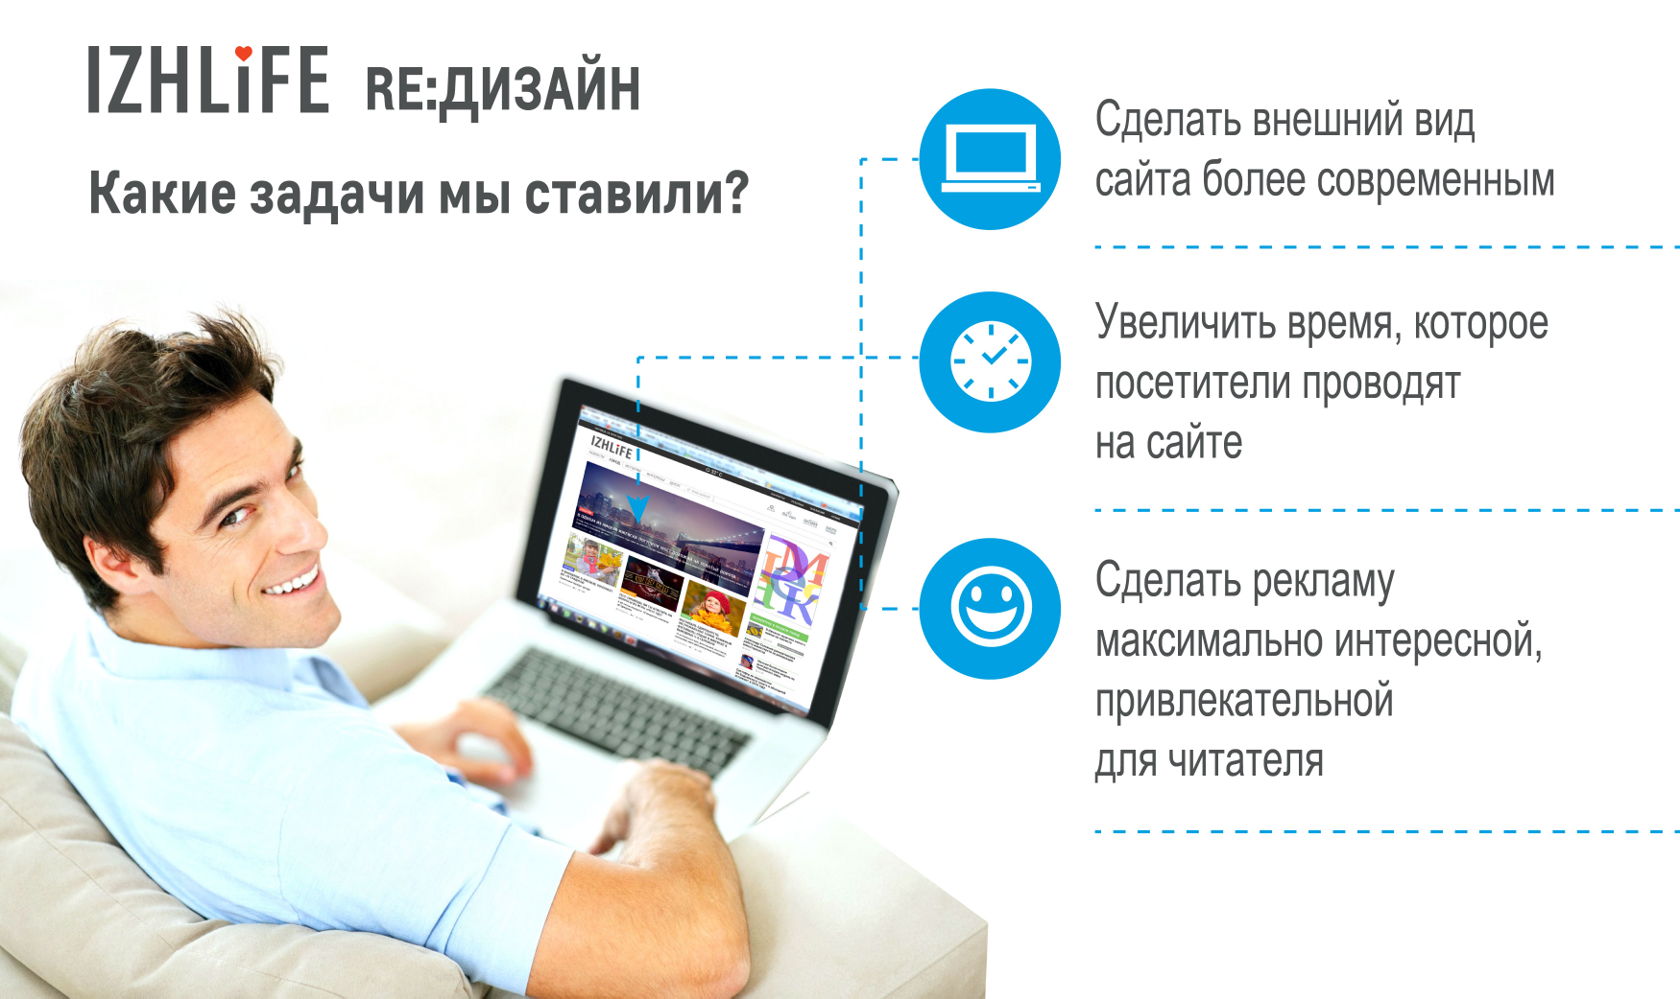 Продвижение сайтов адвертпро. Реклама на сайте. Реклама на сайтах в интернете.